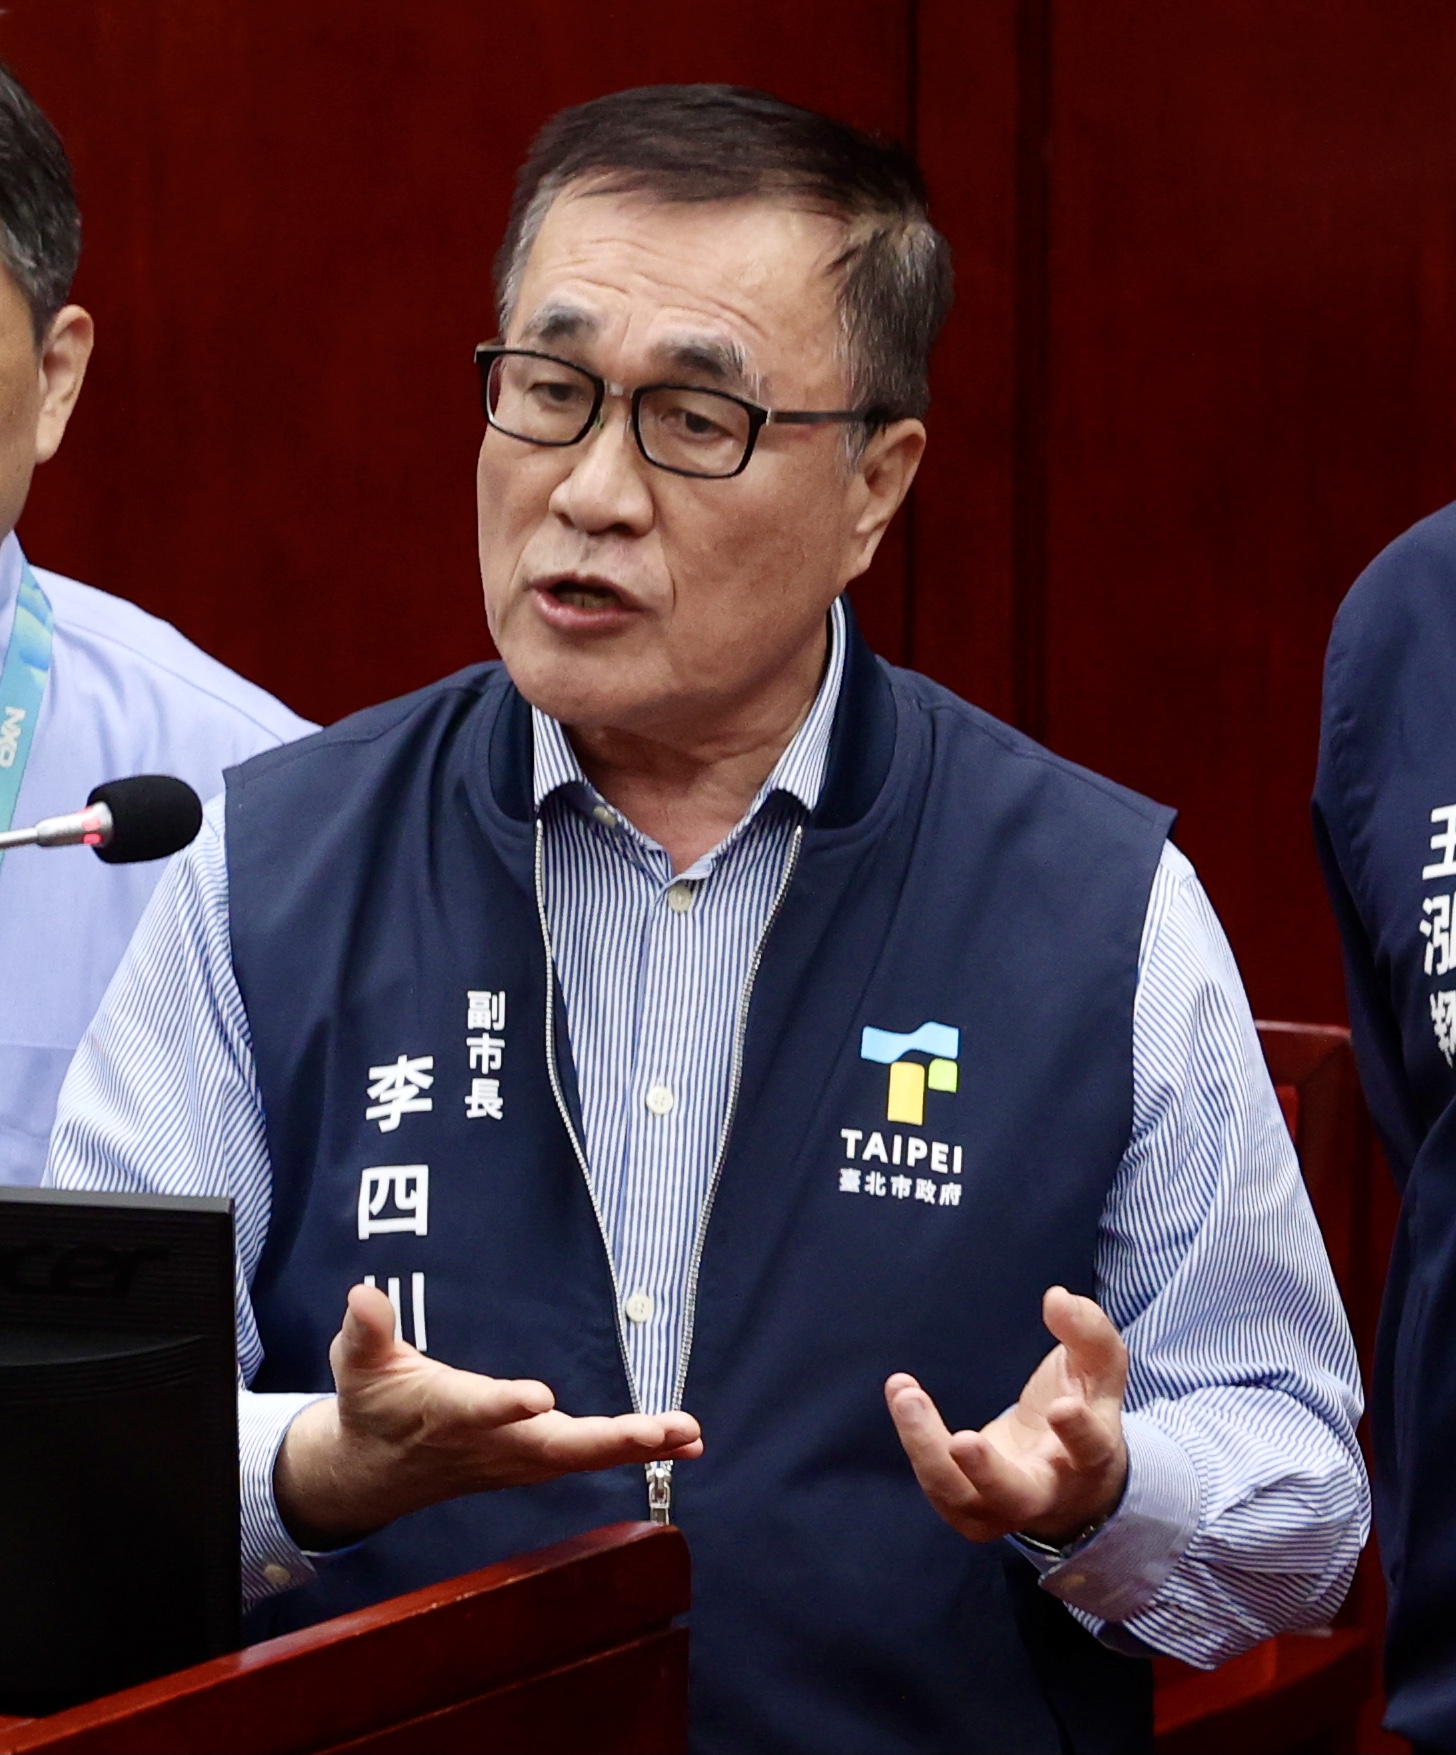 台北市副市长李四川喊话中央，希望研拟修法，让地方能有公权力可介入，以黄单为例，针对危险建物补强。本报资料照片